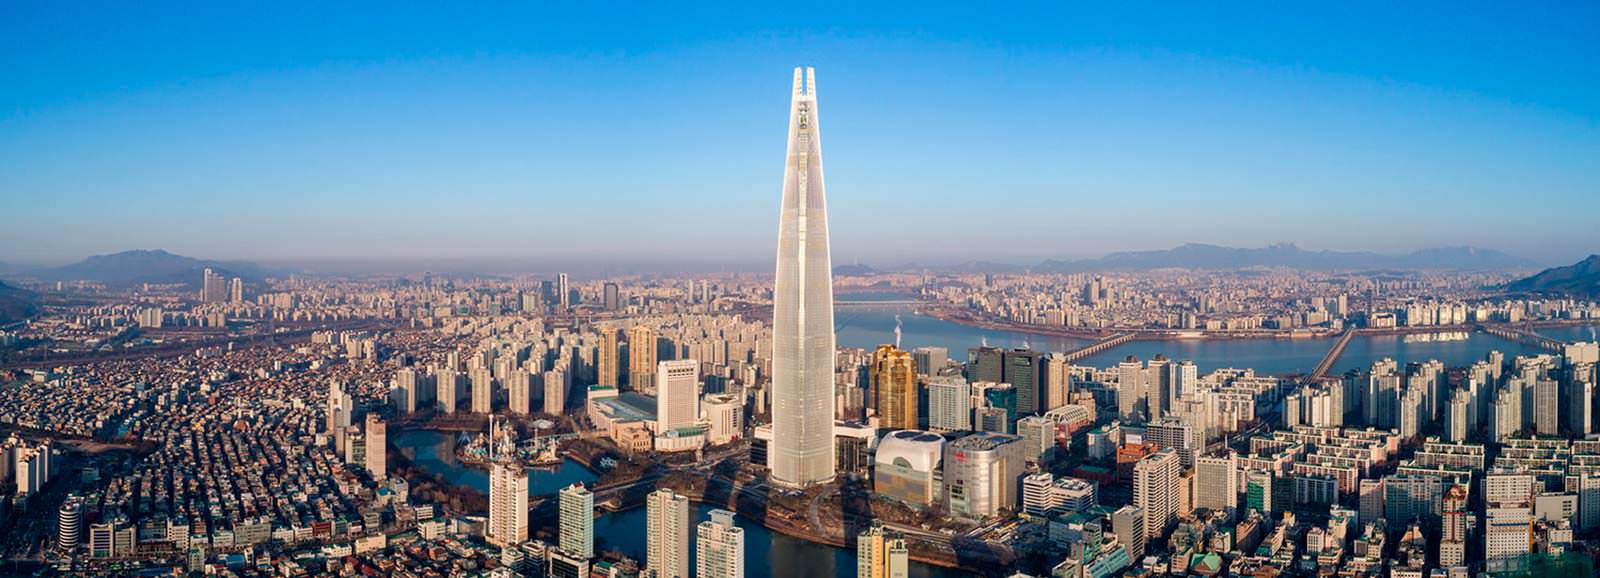 Самый высокий небоскреб Сеула Lotte World Tower: №5 в мире